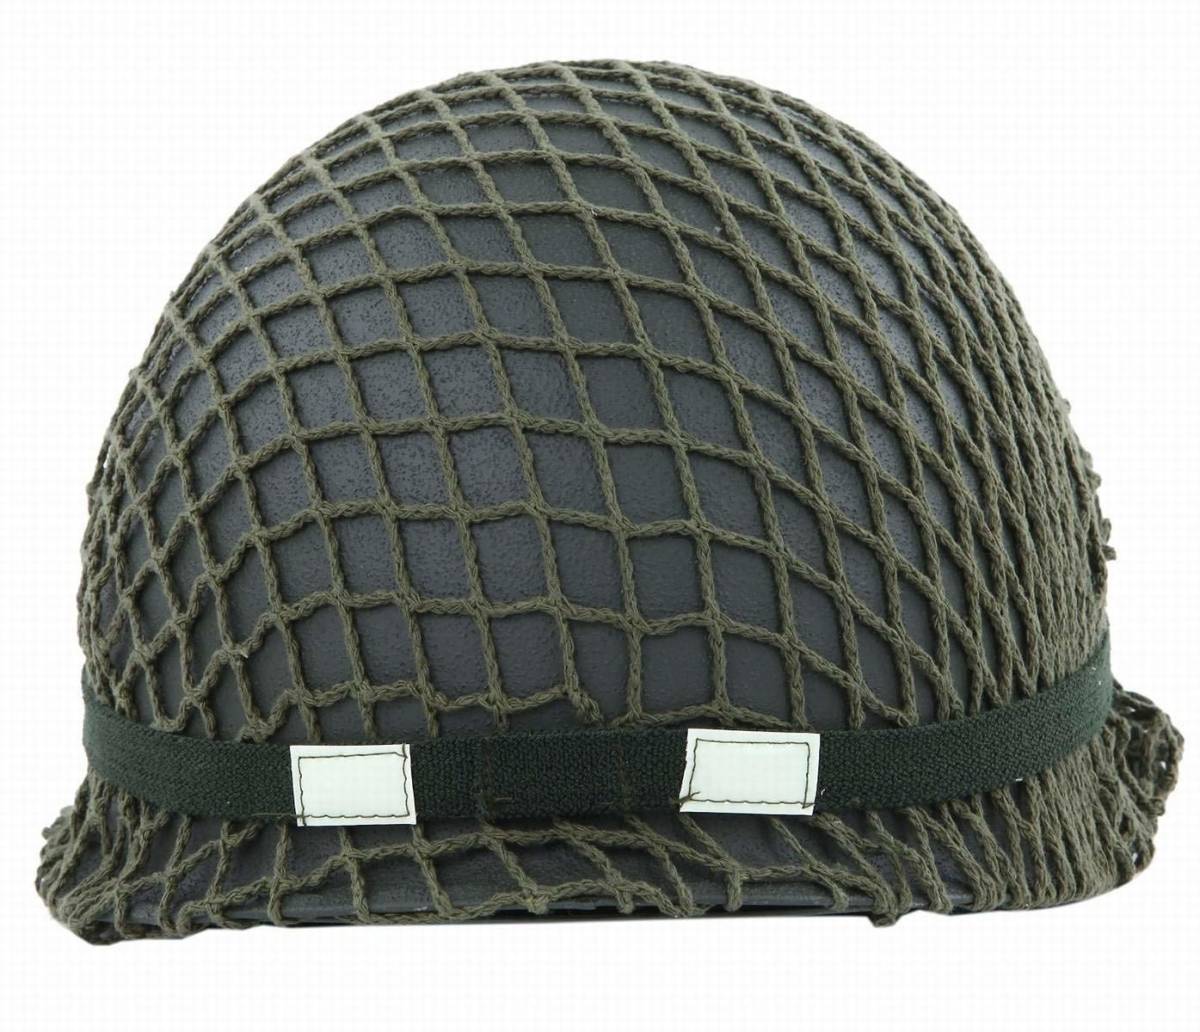 【 международная доставка 】WW2  Америка ... M1 шлем   внутри   головной убор   *   сетка  *   лента  включено   тщательный  ... пр-во  